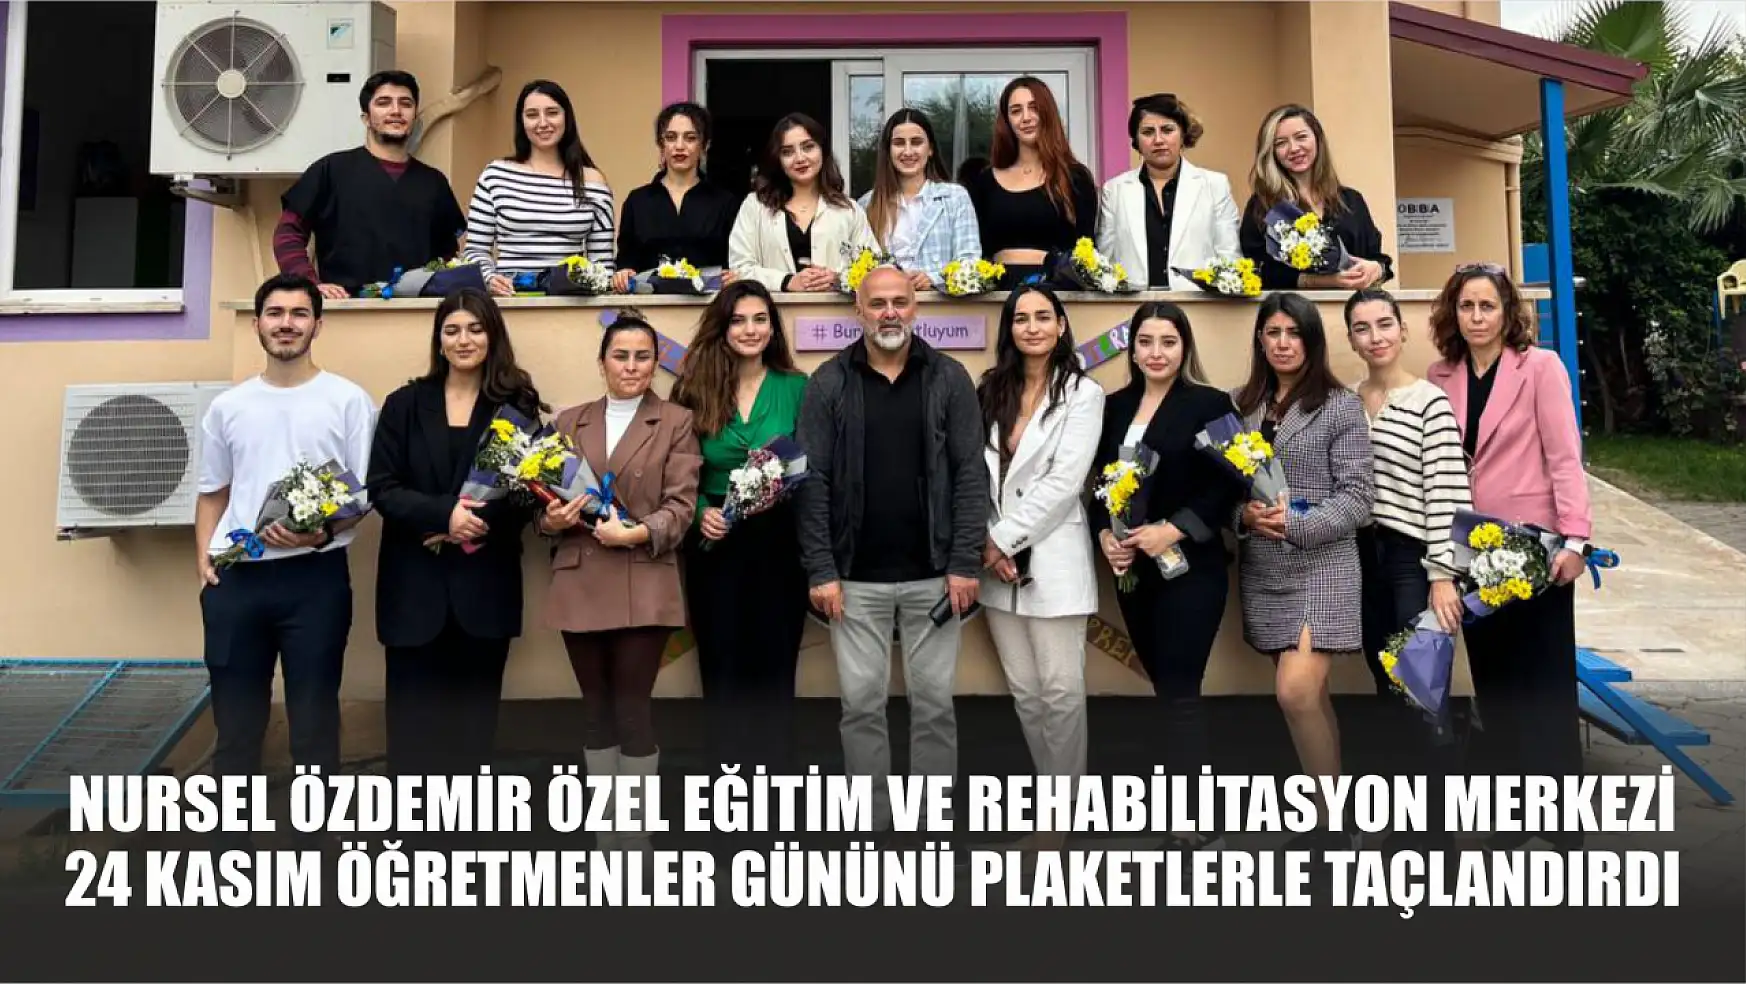 Nursel Özdemir Özel Eğitim ve Rehabilitasyon Merkezi 24 Kasım Öğretmenler Gününü Plaketlerle Taçlandırdı